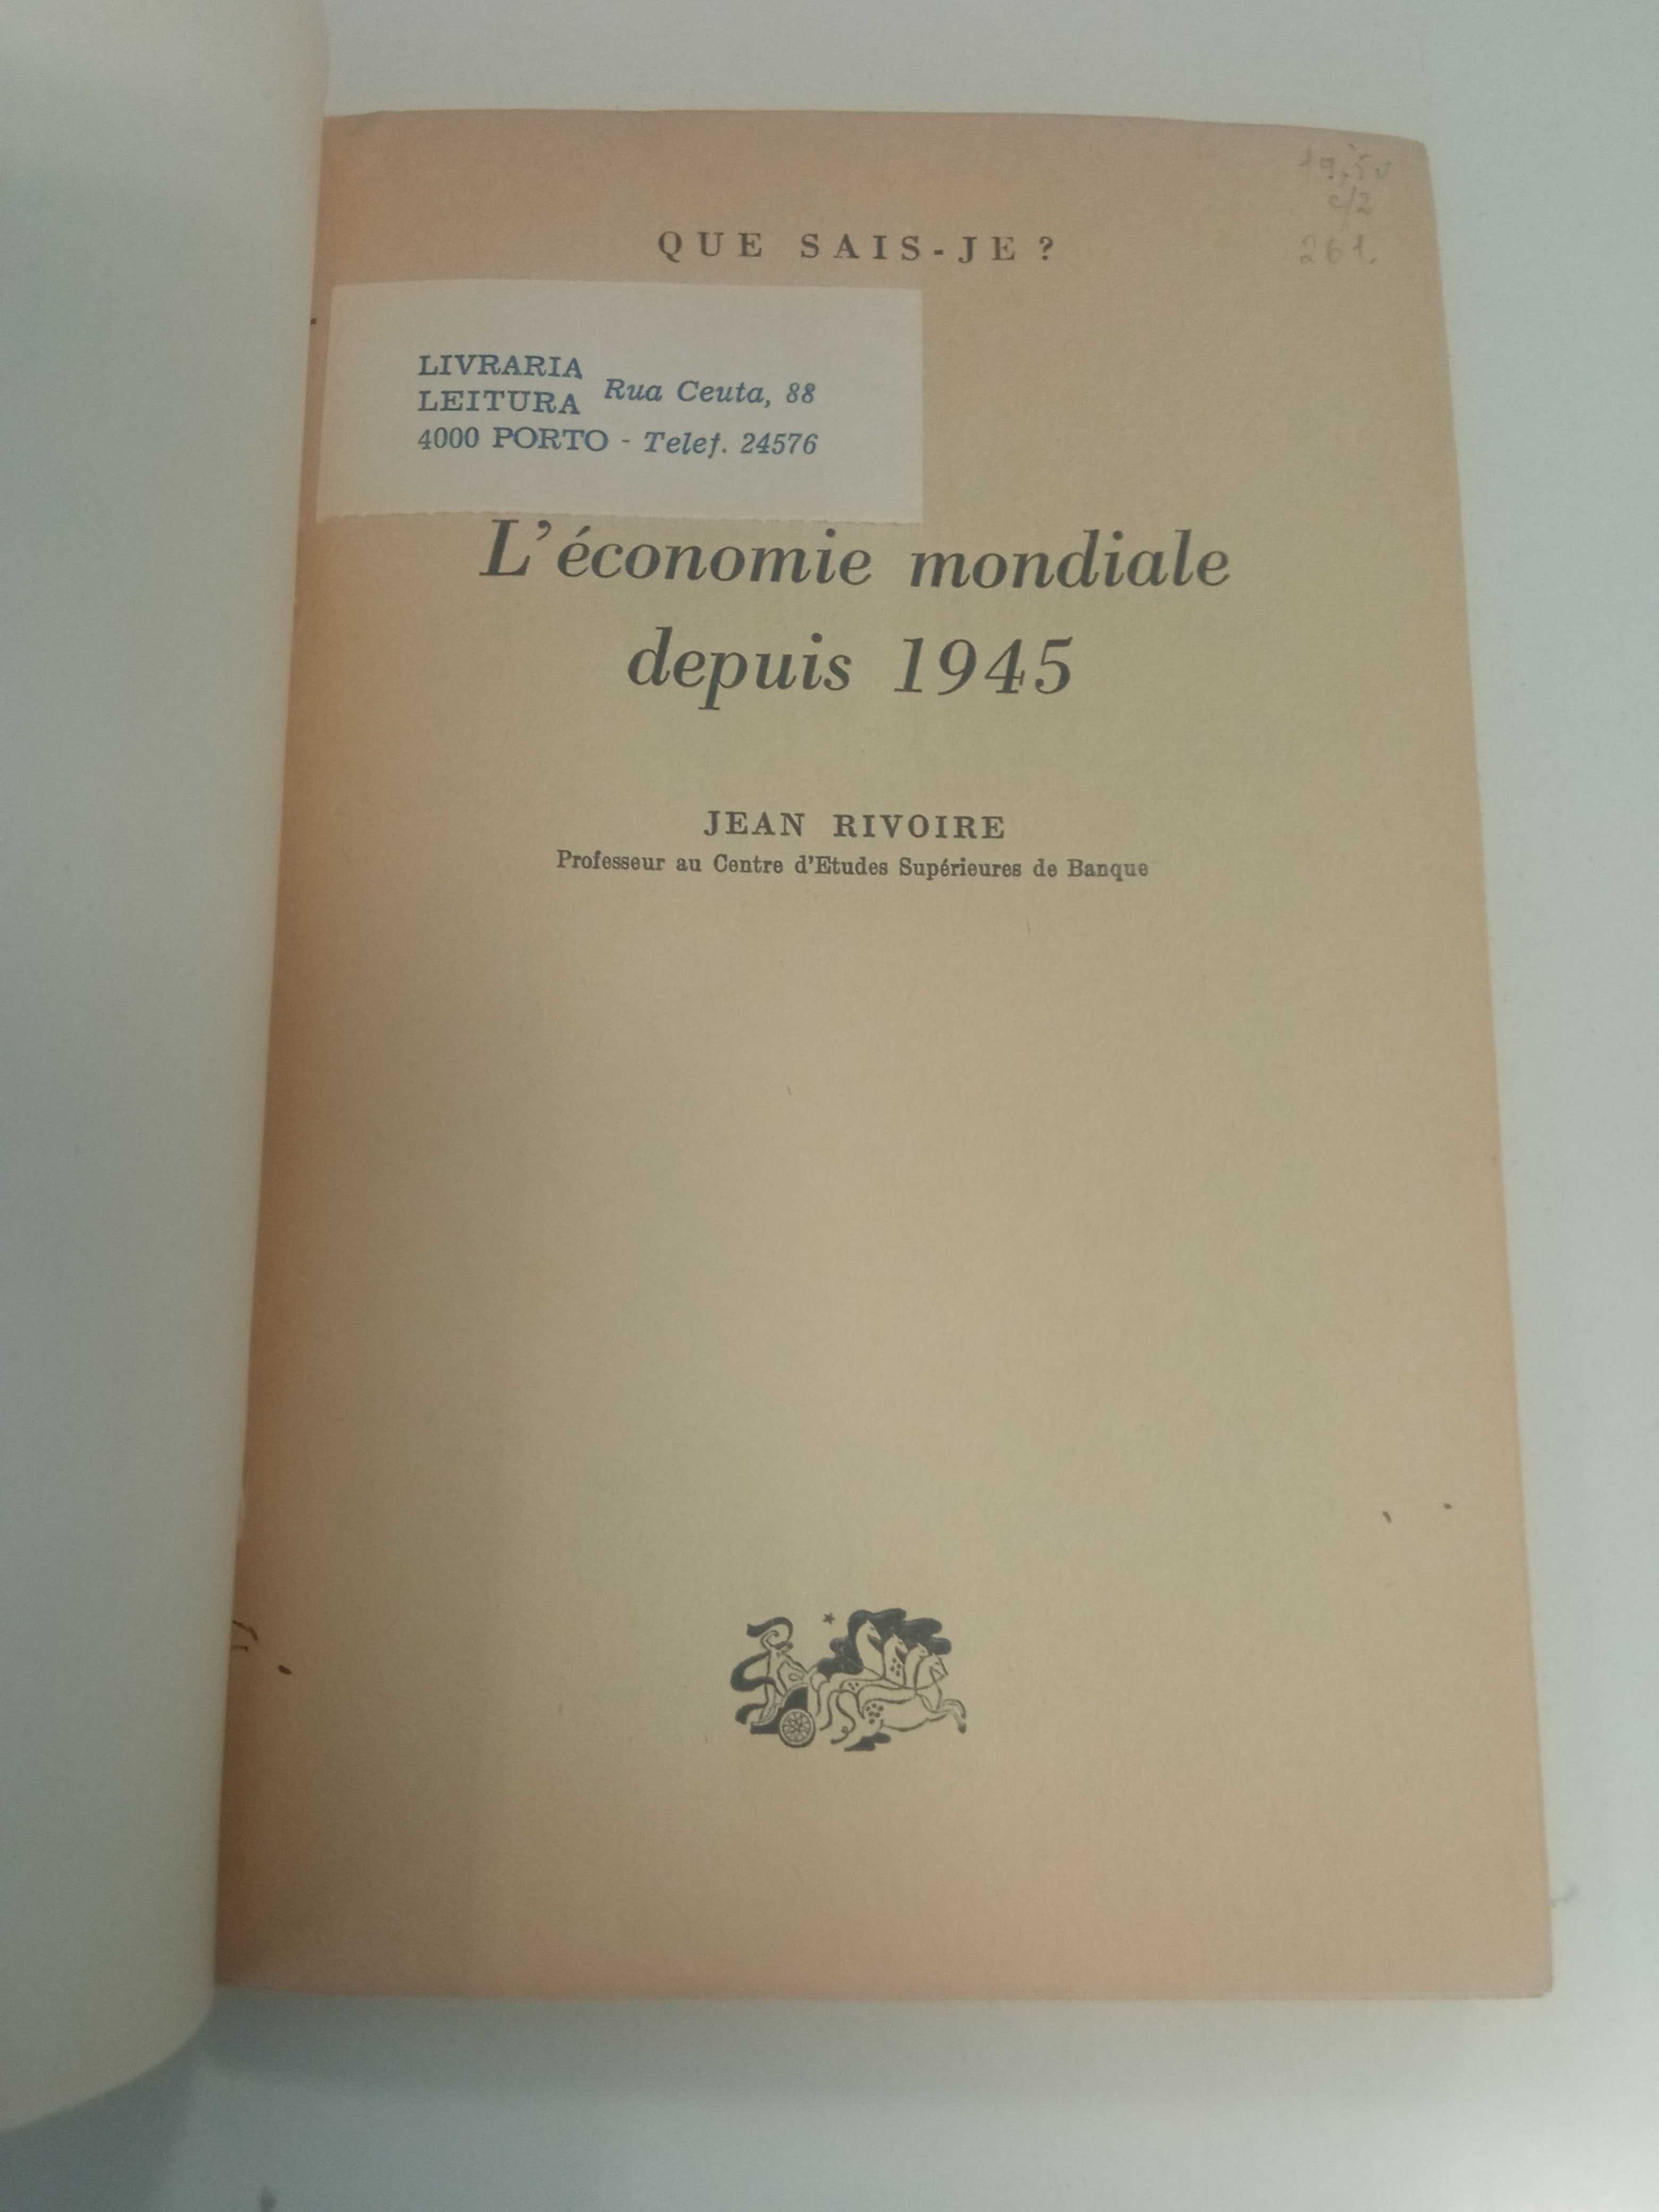 L' economia mondiale depois 1945